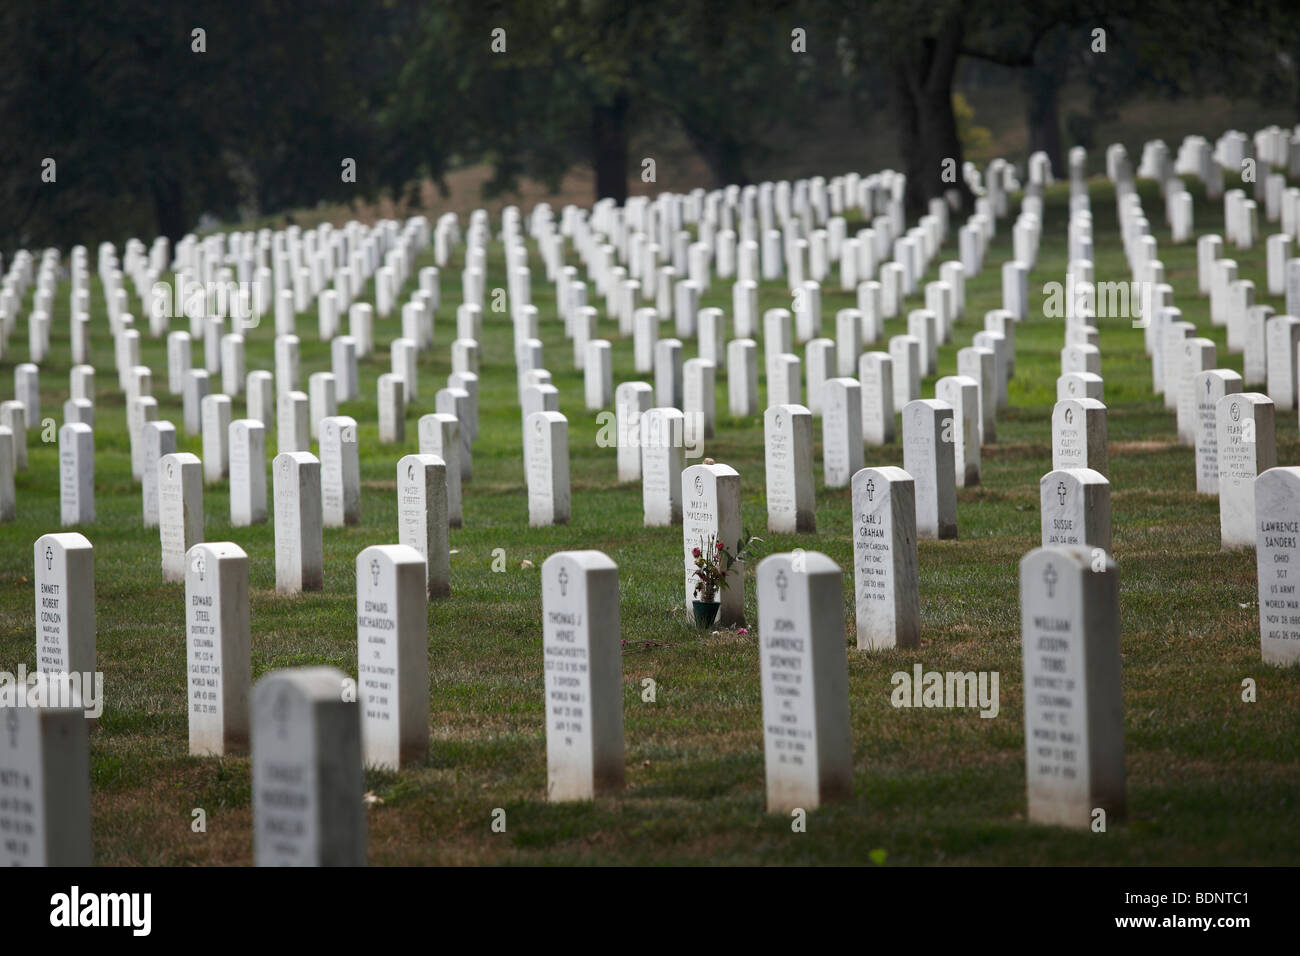 Une seule pierre tombale se distingue par des fleurs d'un être cher au cimetière national d'Arlington, Arlington, VA. Banque D'Images